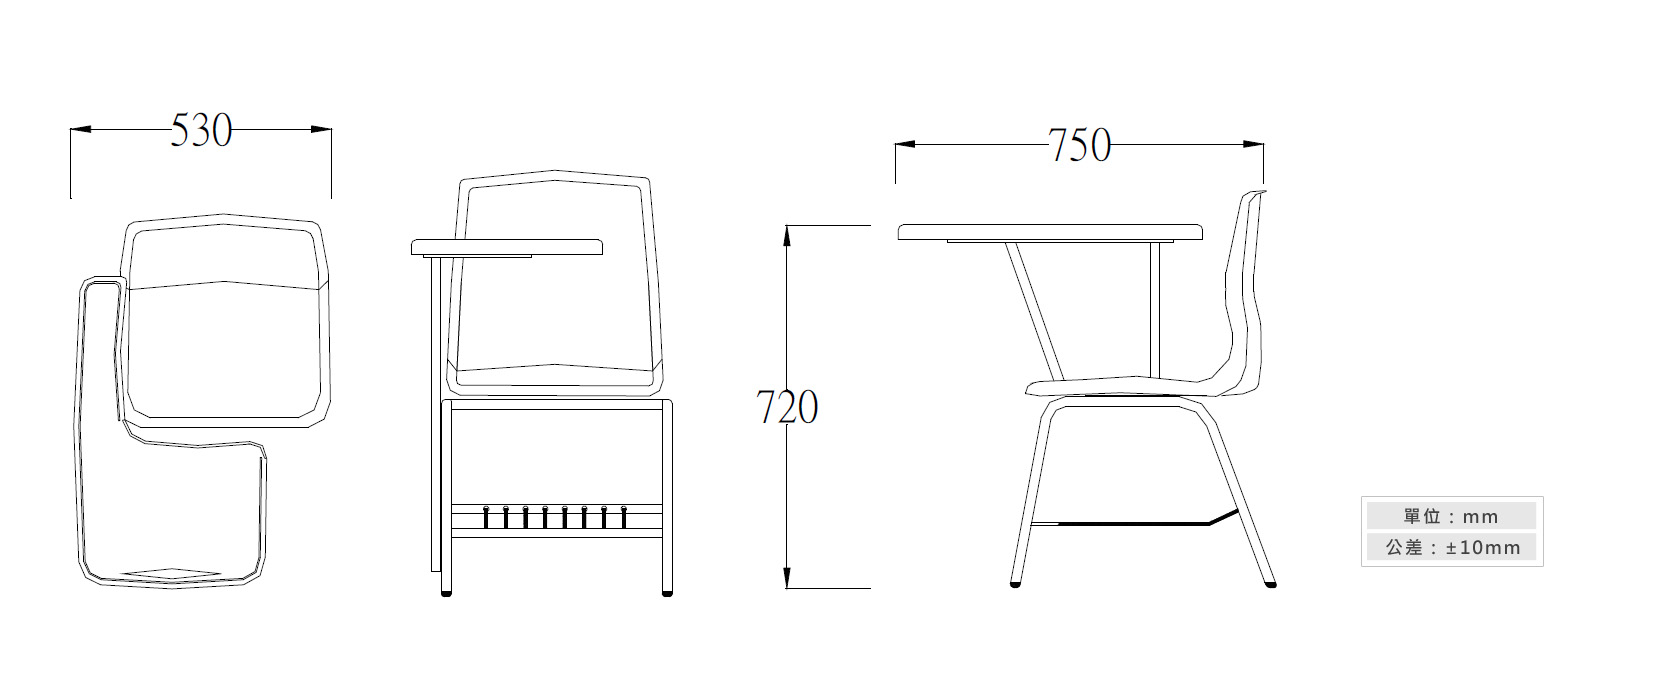 2-33A 學生單人課桌椅材質說明